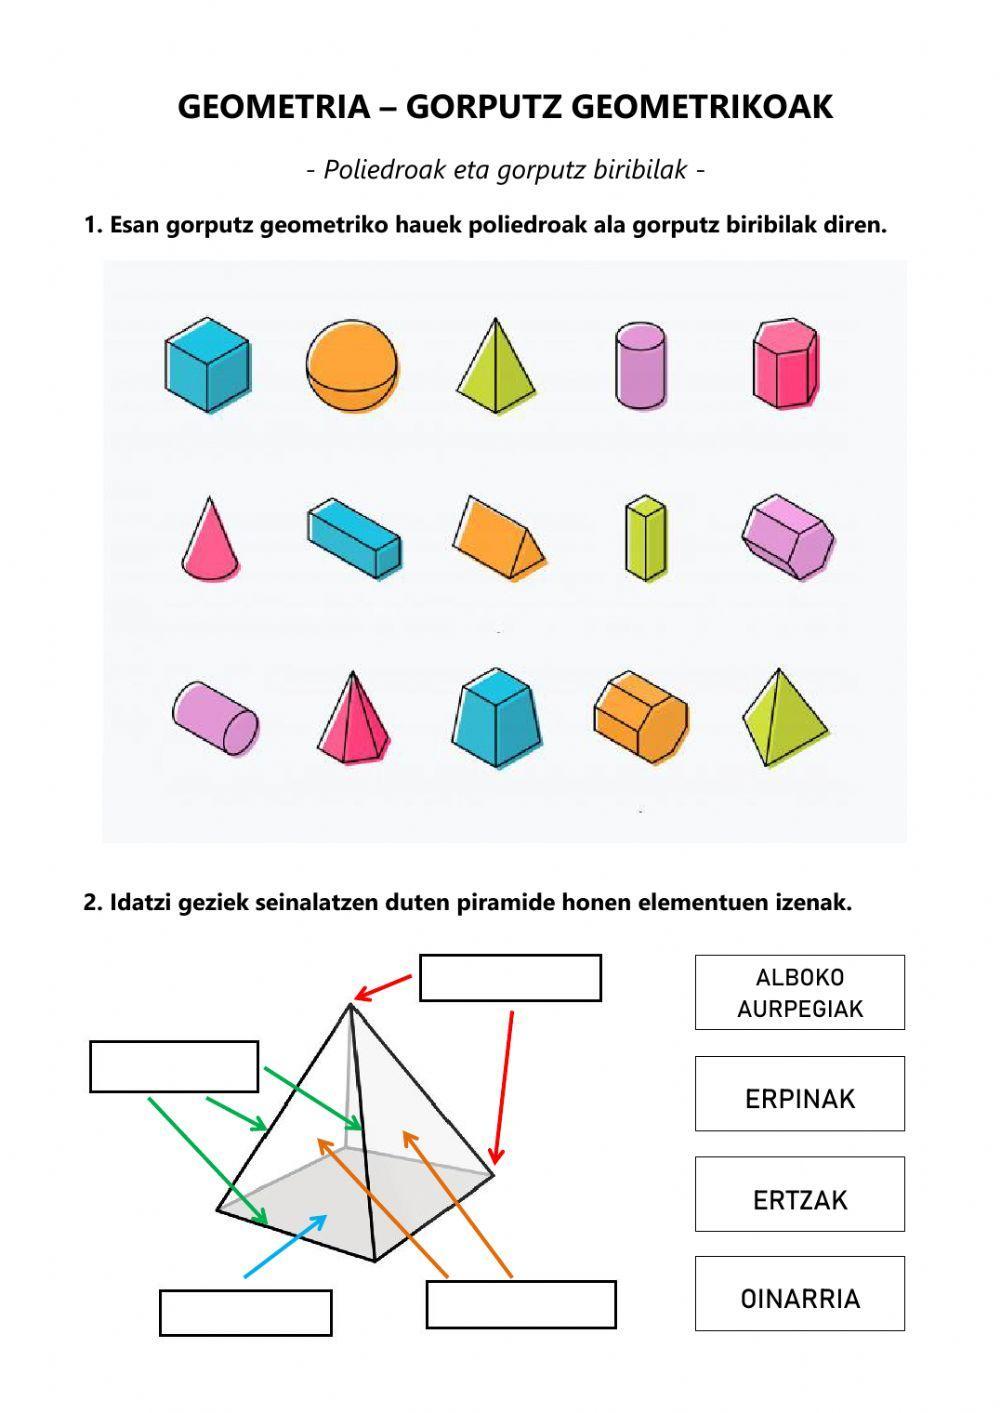 Gorputz geometrikoak (2)